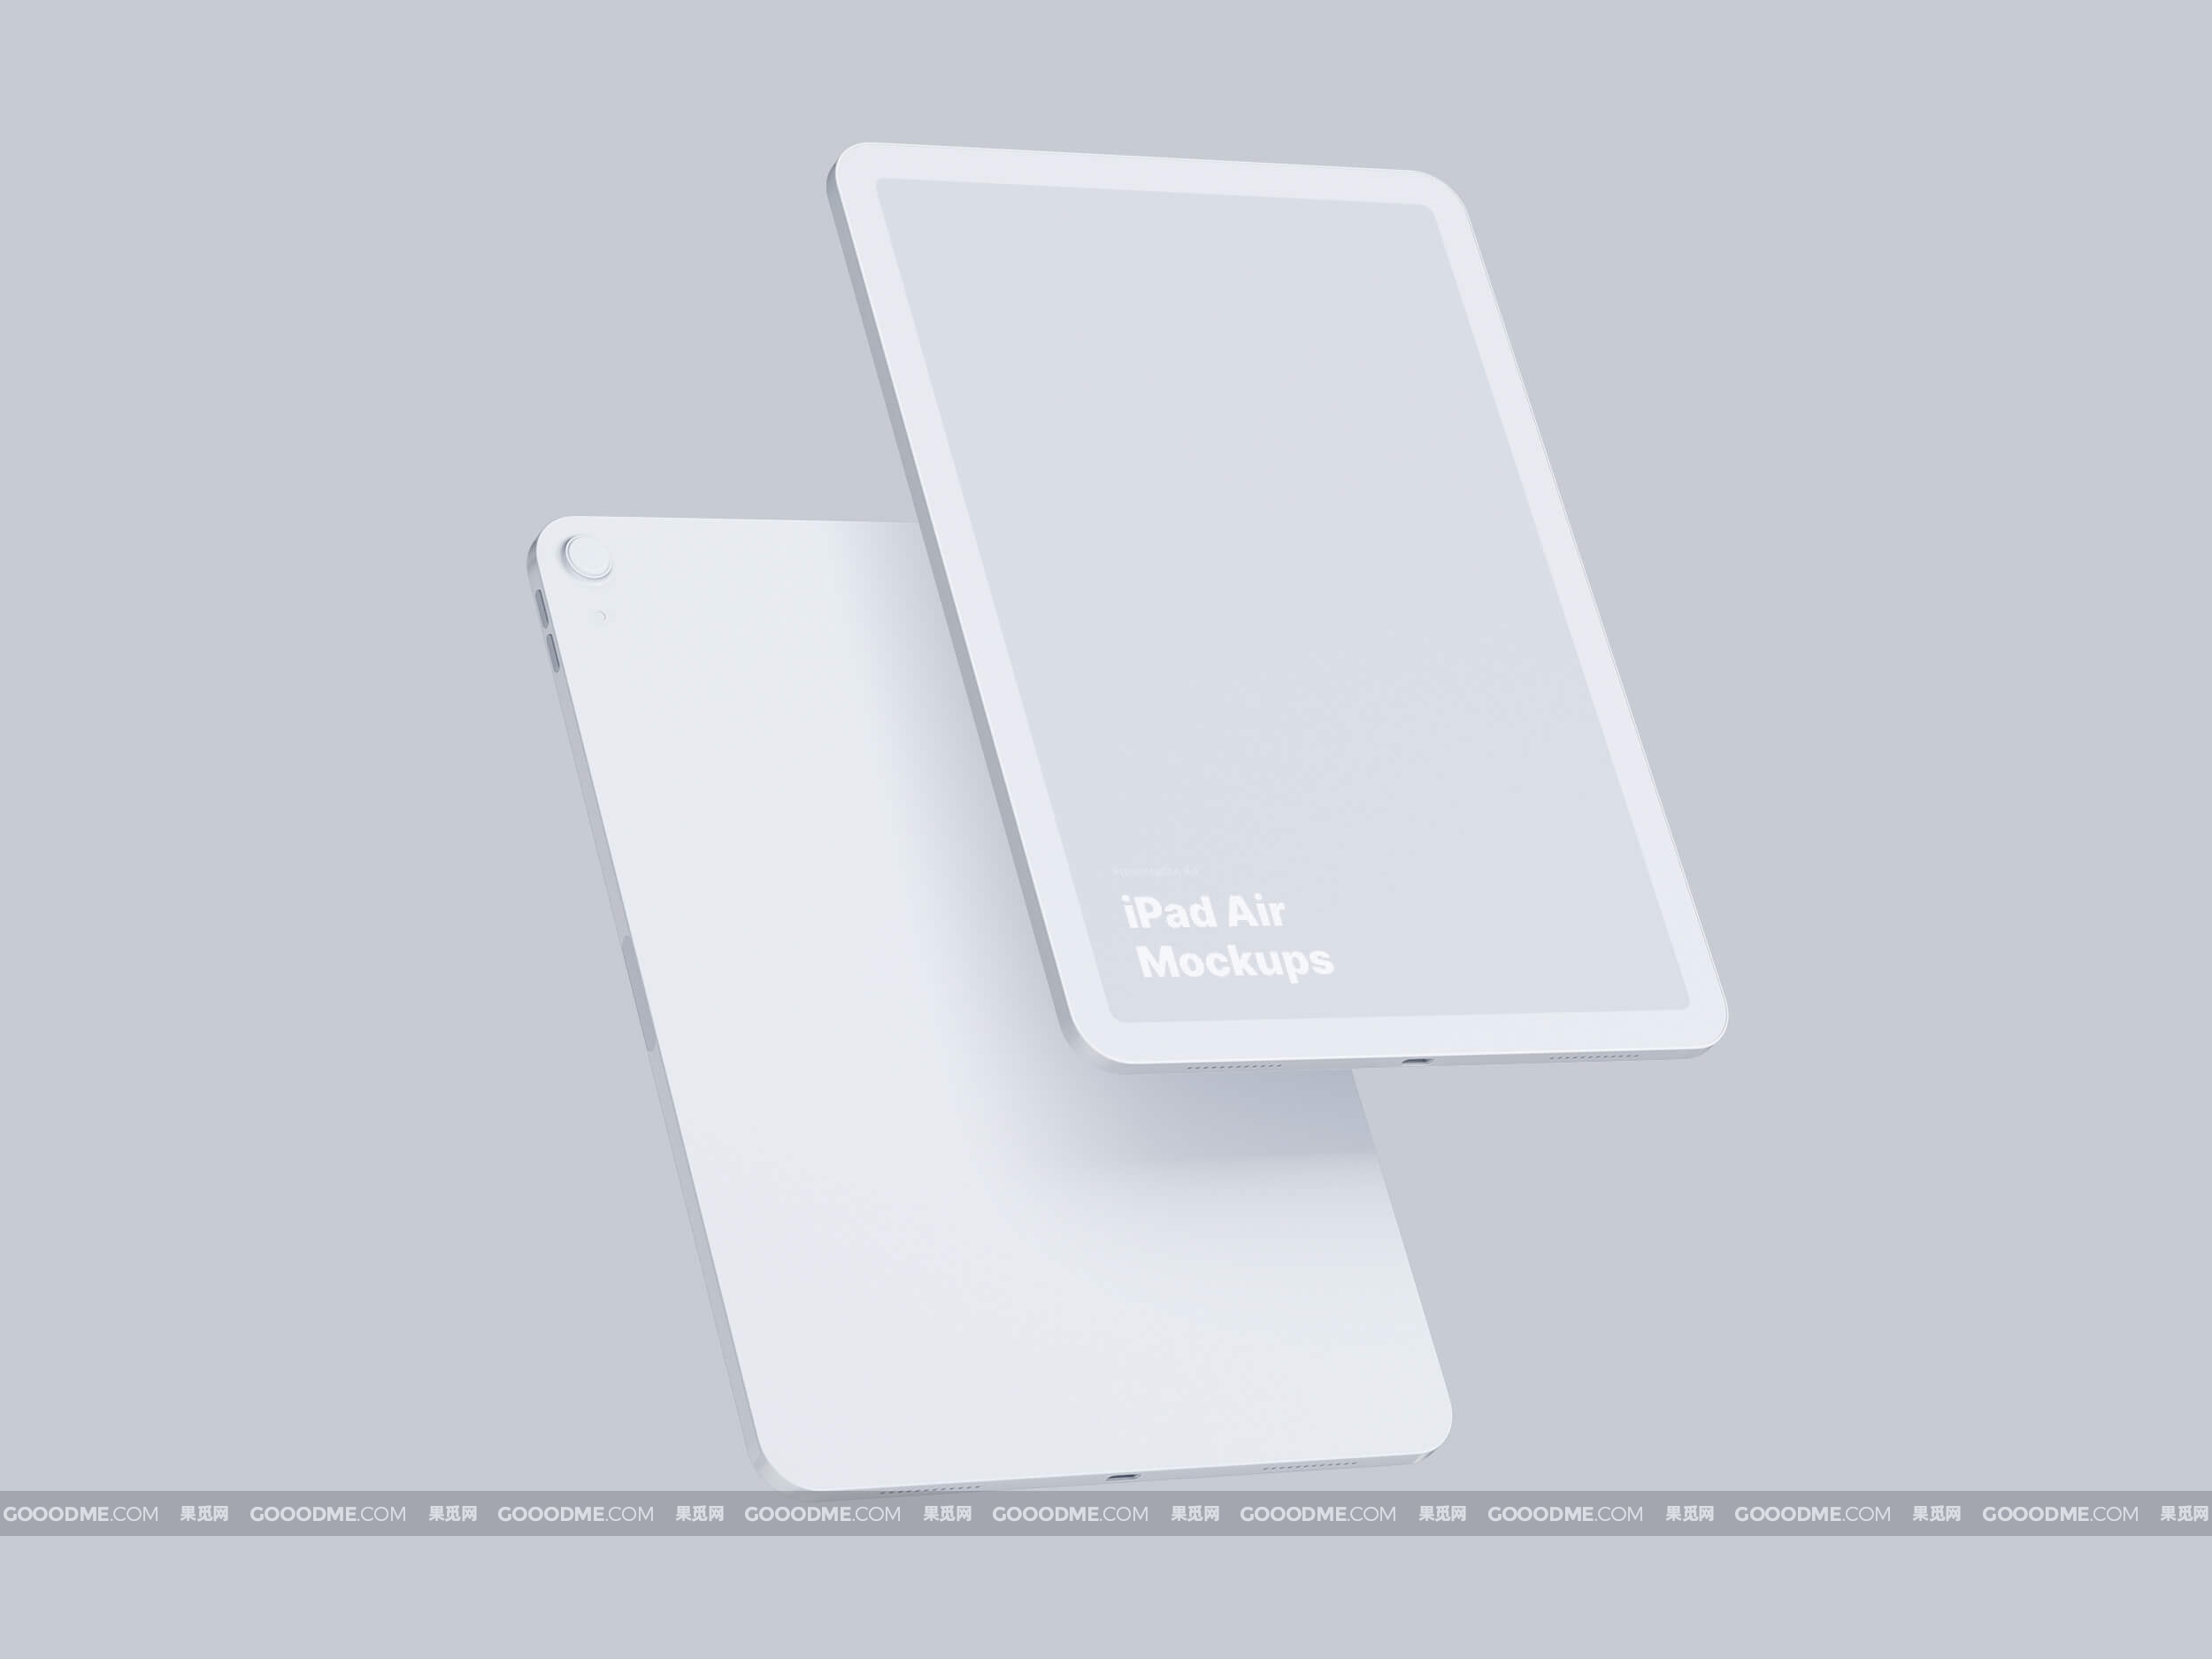 373 可商用iPad Air平板电脑屏幕展示UI设计样机素材 iPad Air Mockups